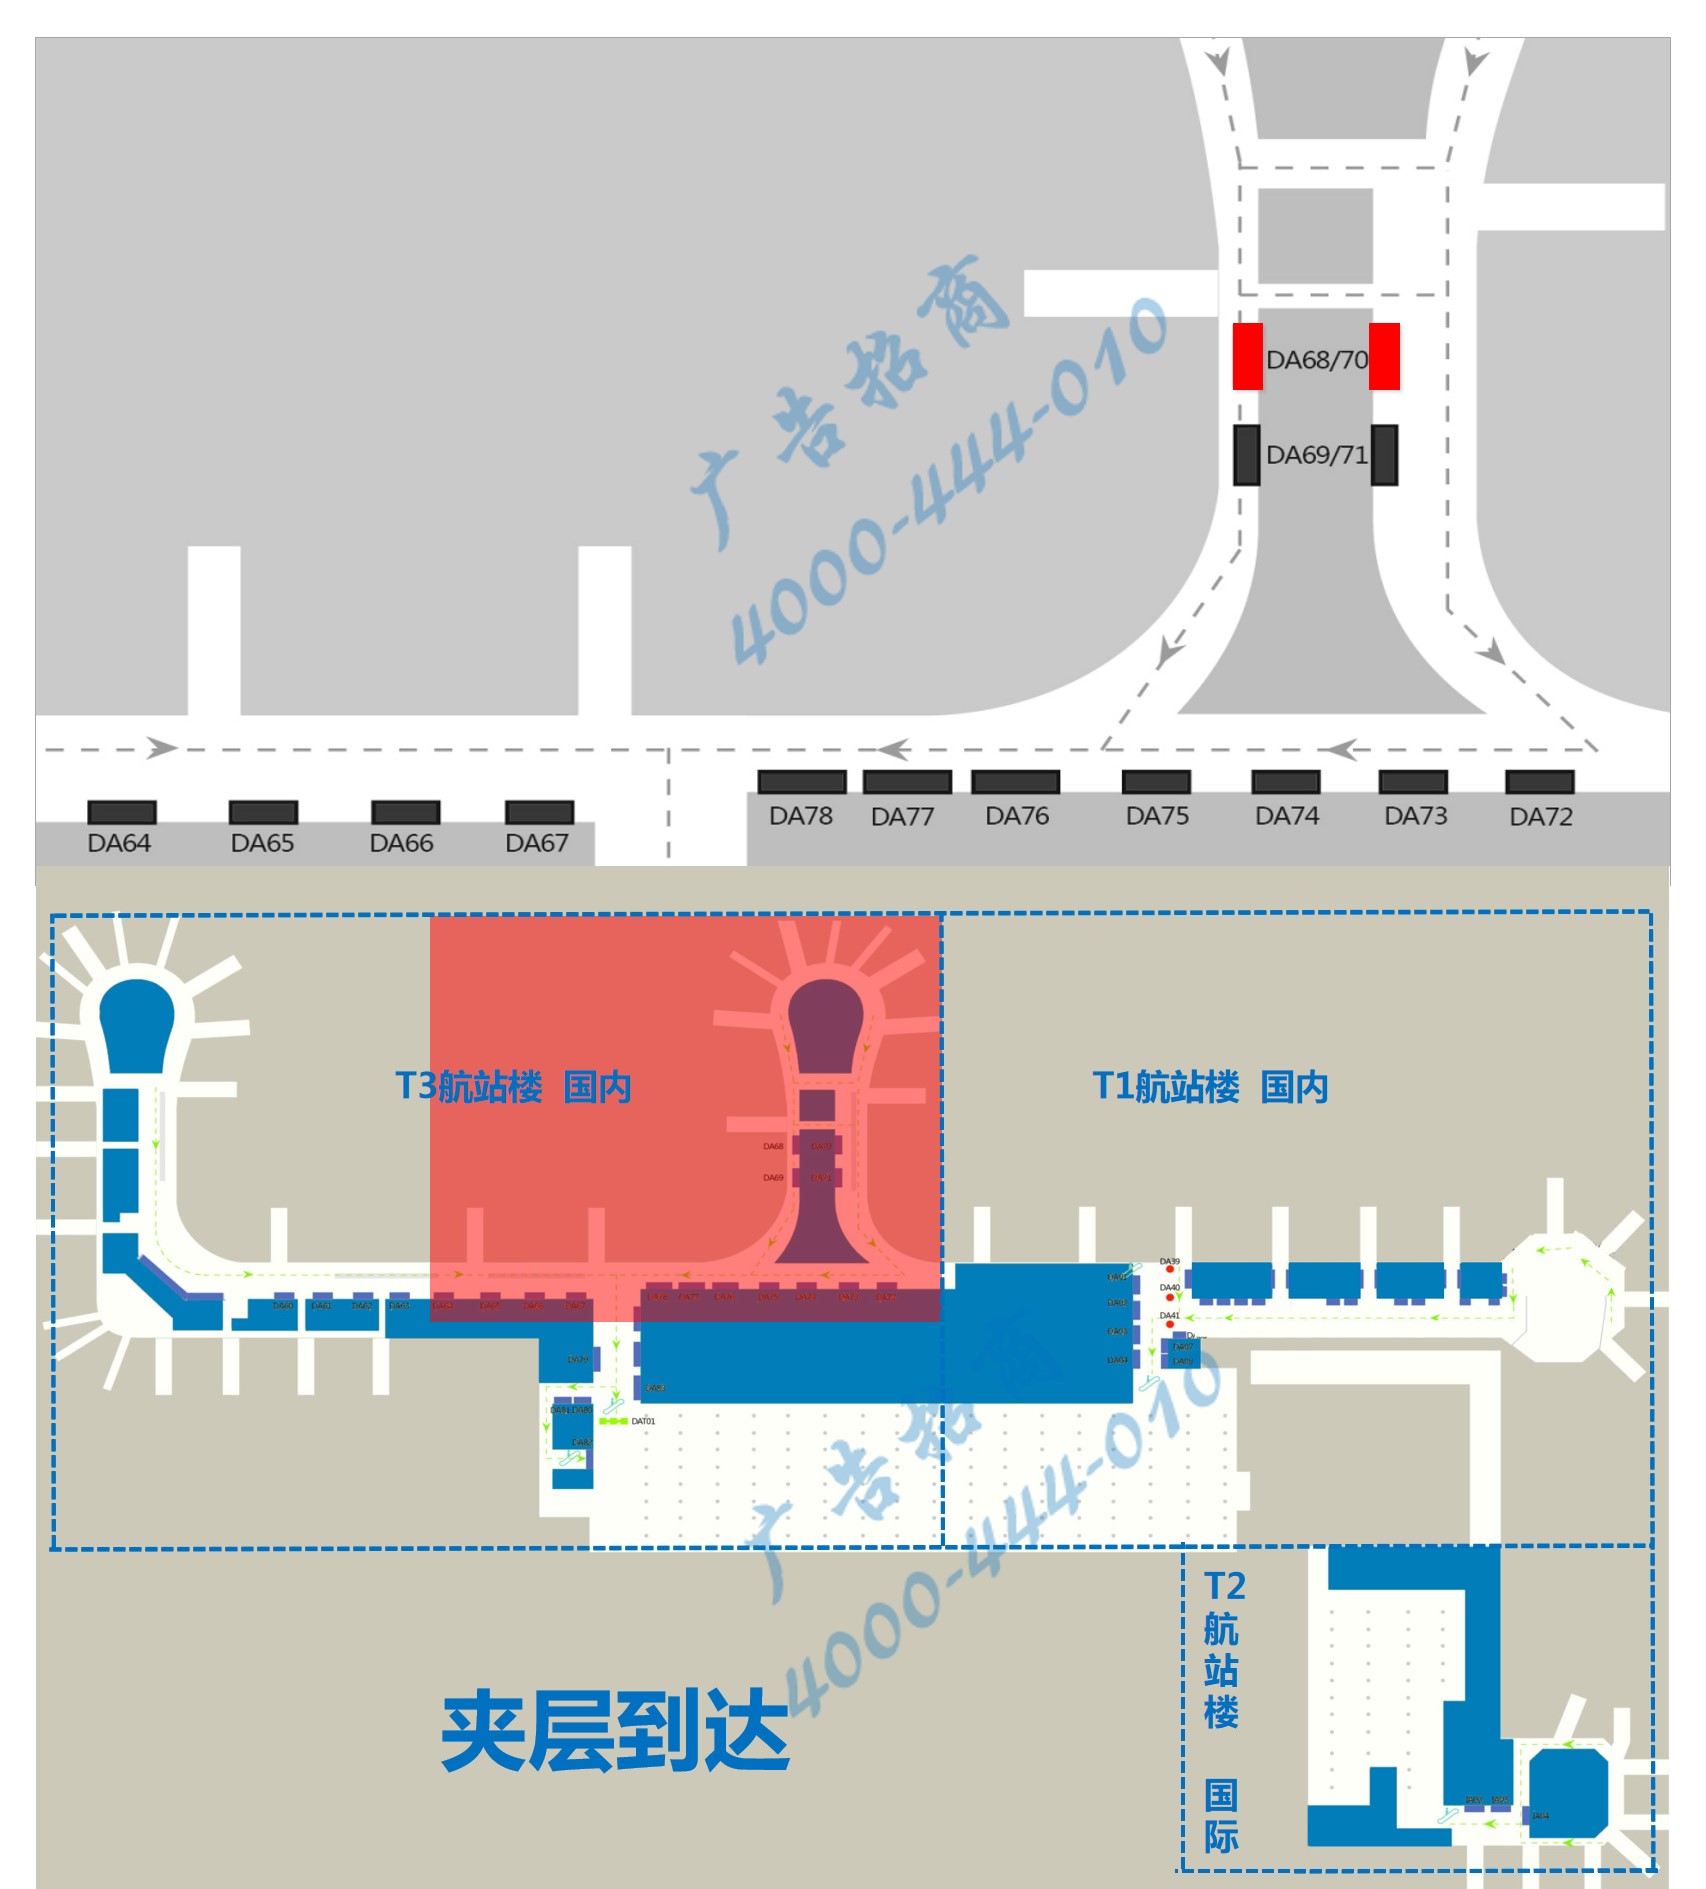 杭州机场广告-T3到达中指廊灯箱DA68/70点位图